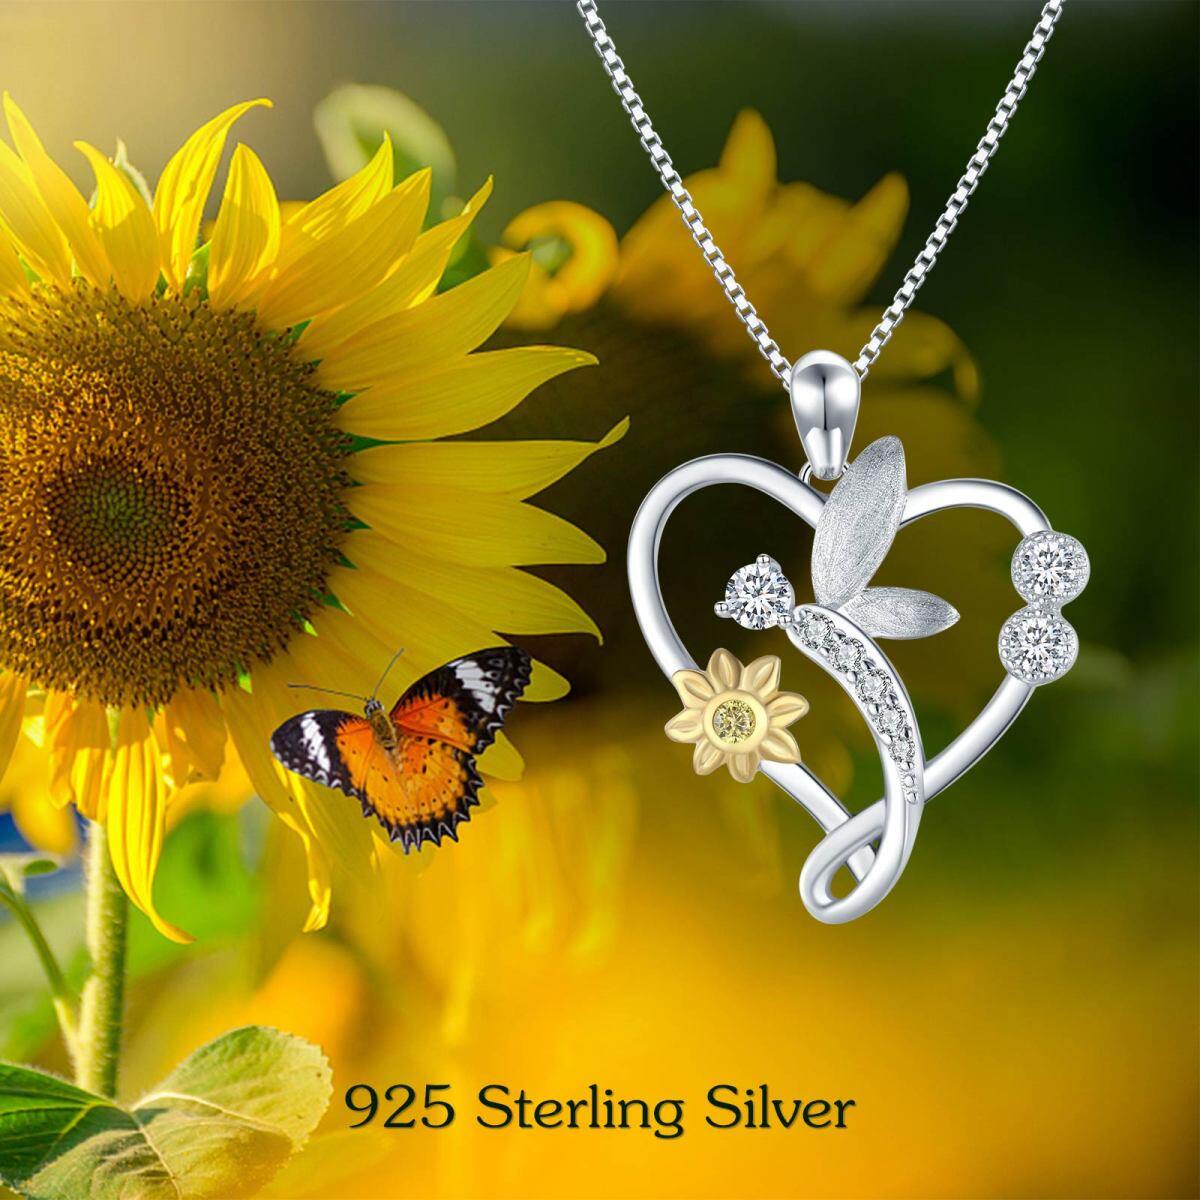 Collier en argent sterling avec pendentif libellule, tournesol et coeur en zirconium cubiq-6